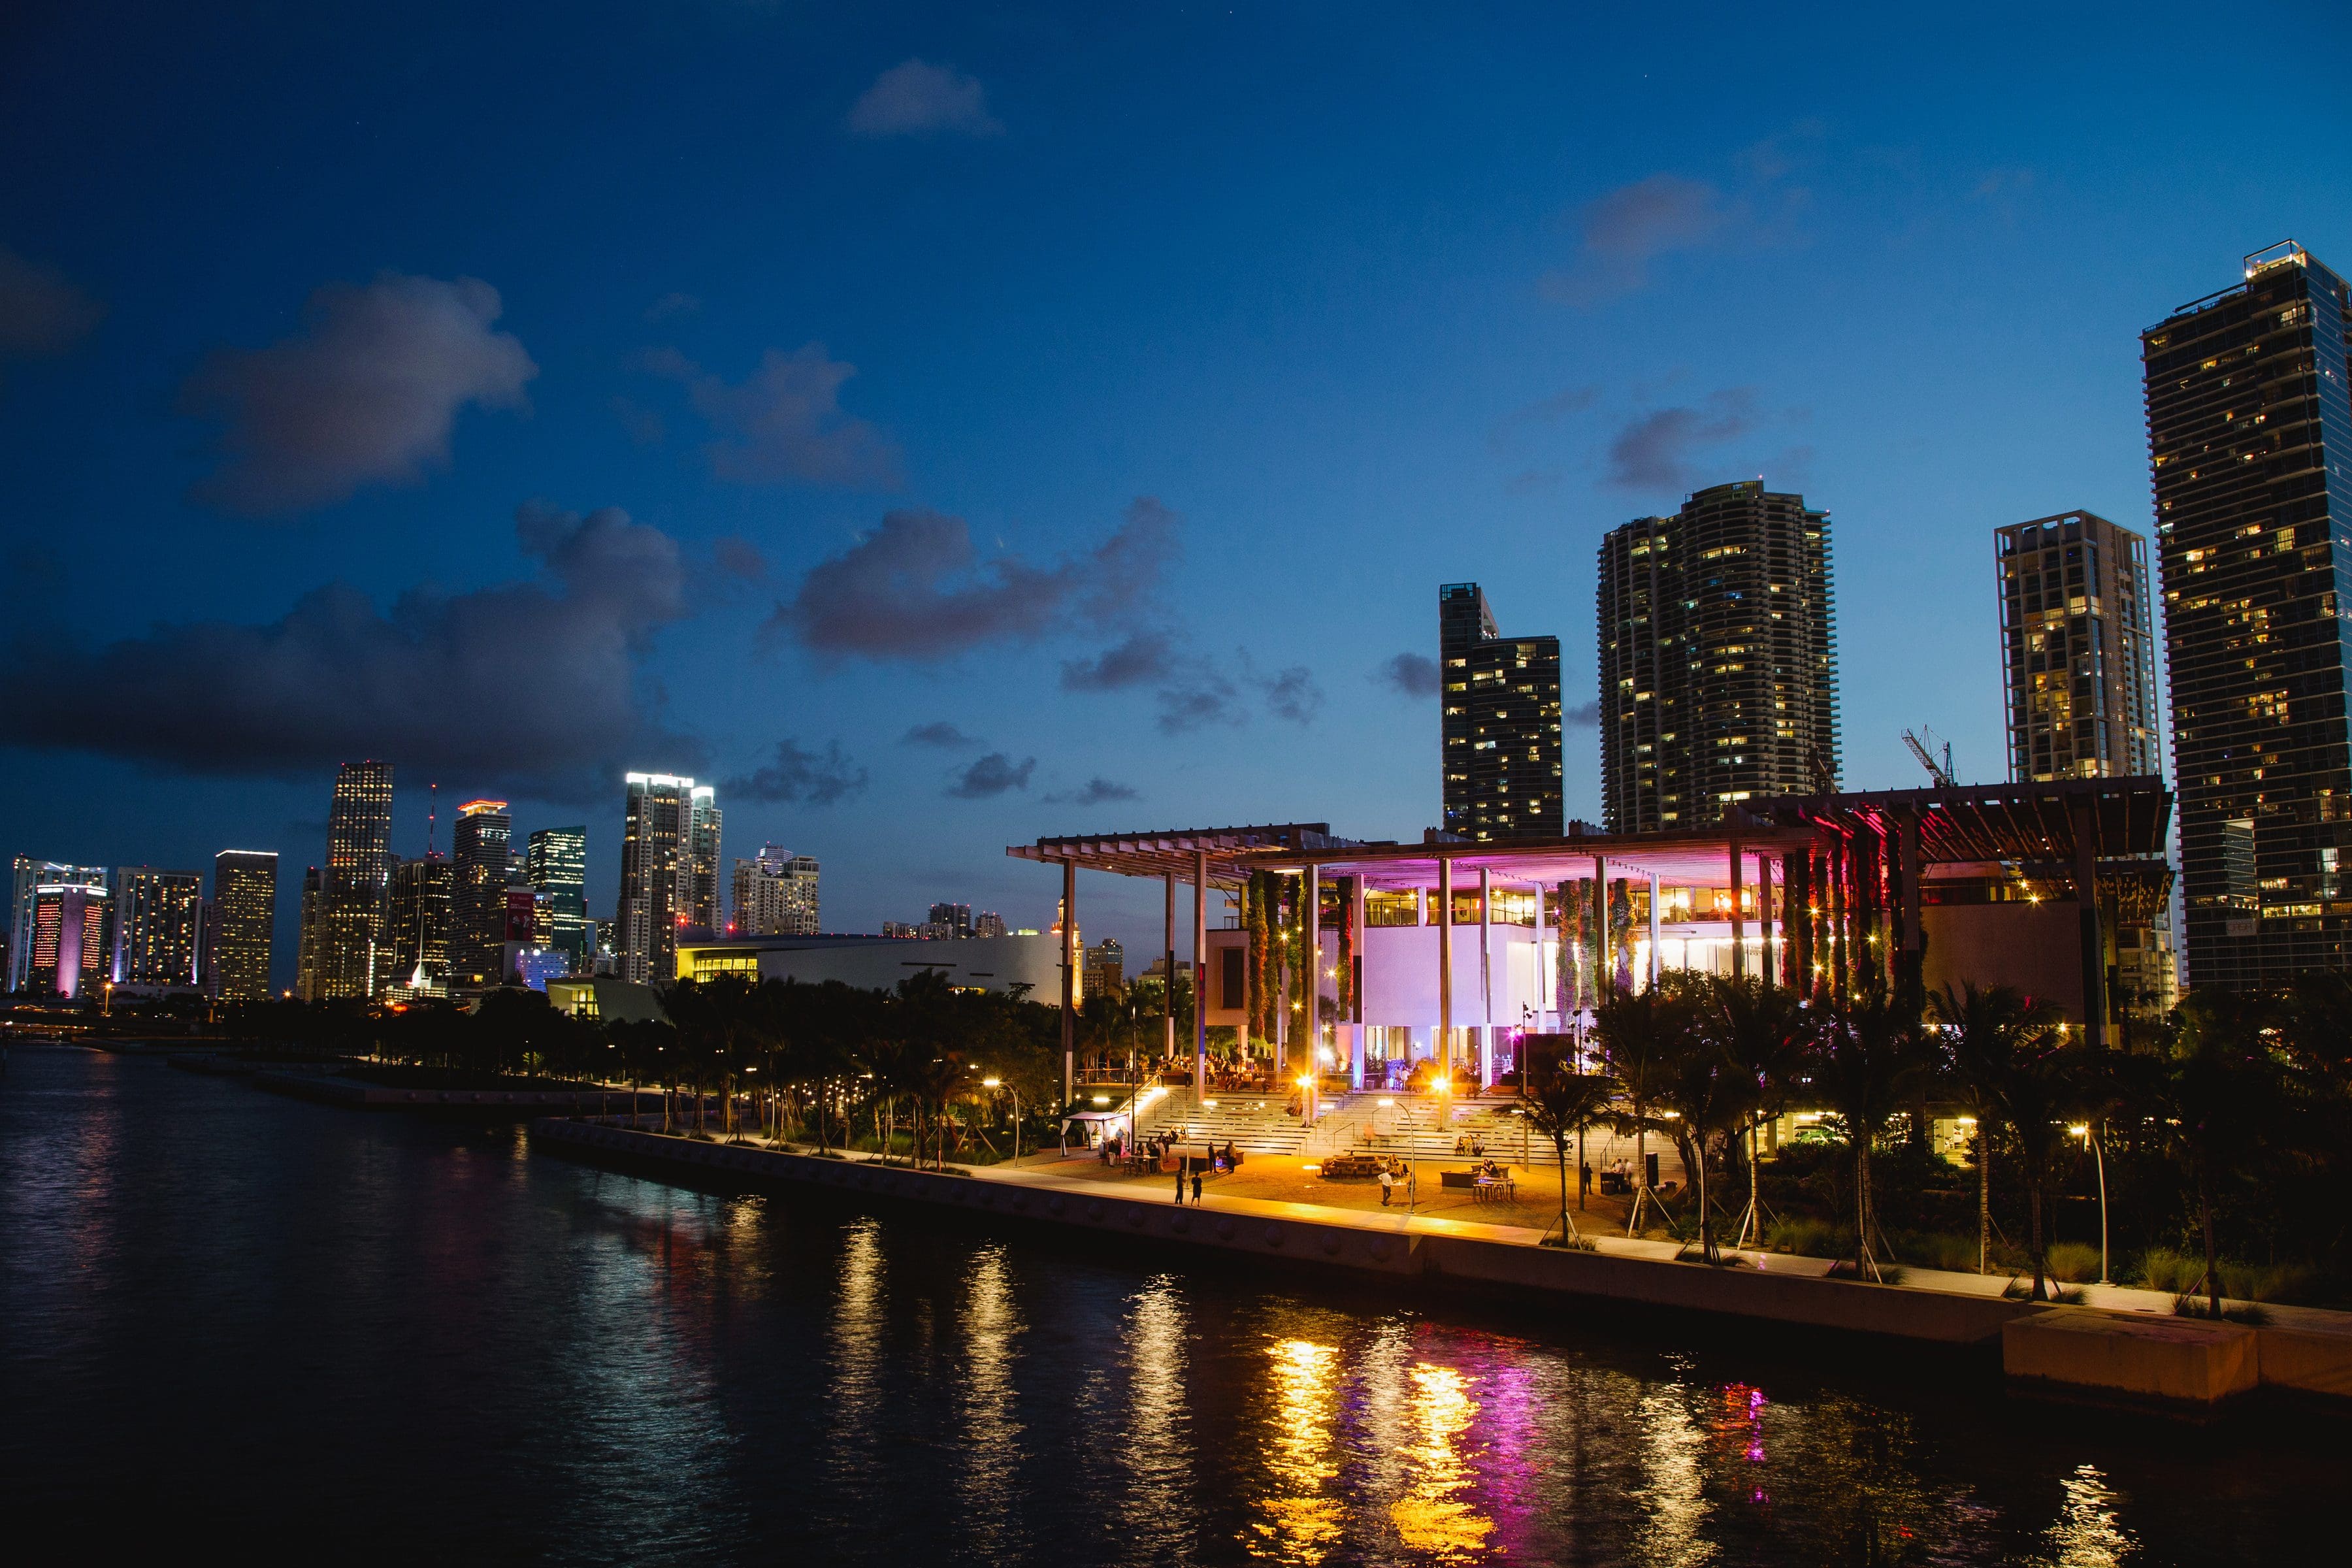 The Pérez Art Museum Miami at night